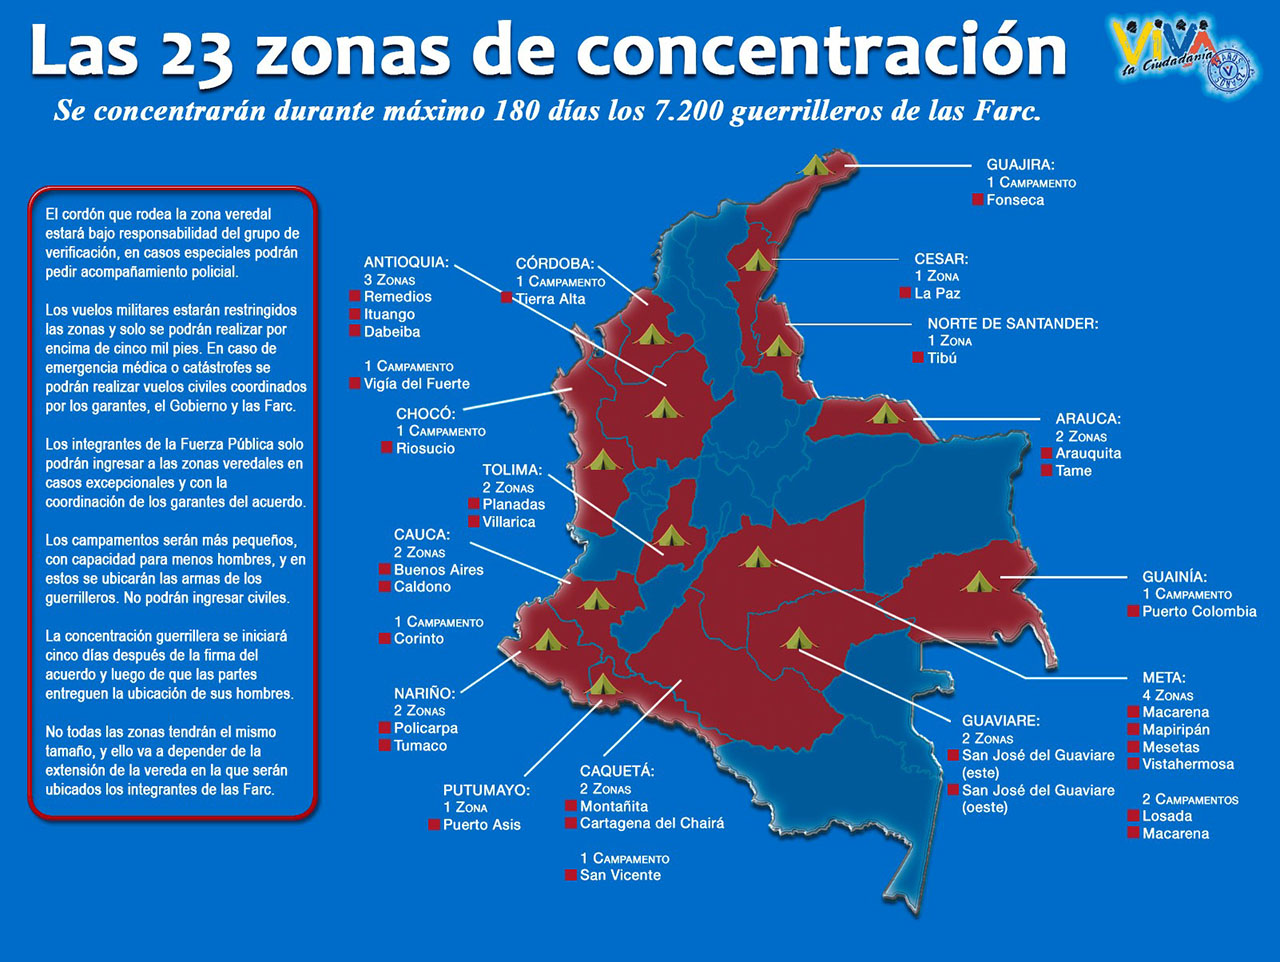 Las 23 zonas de concentración.